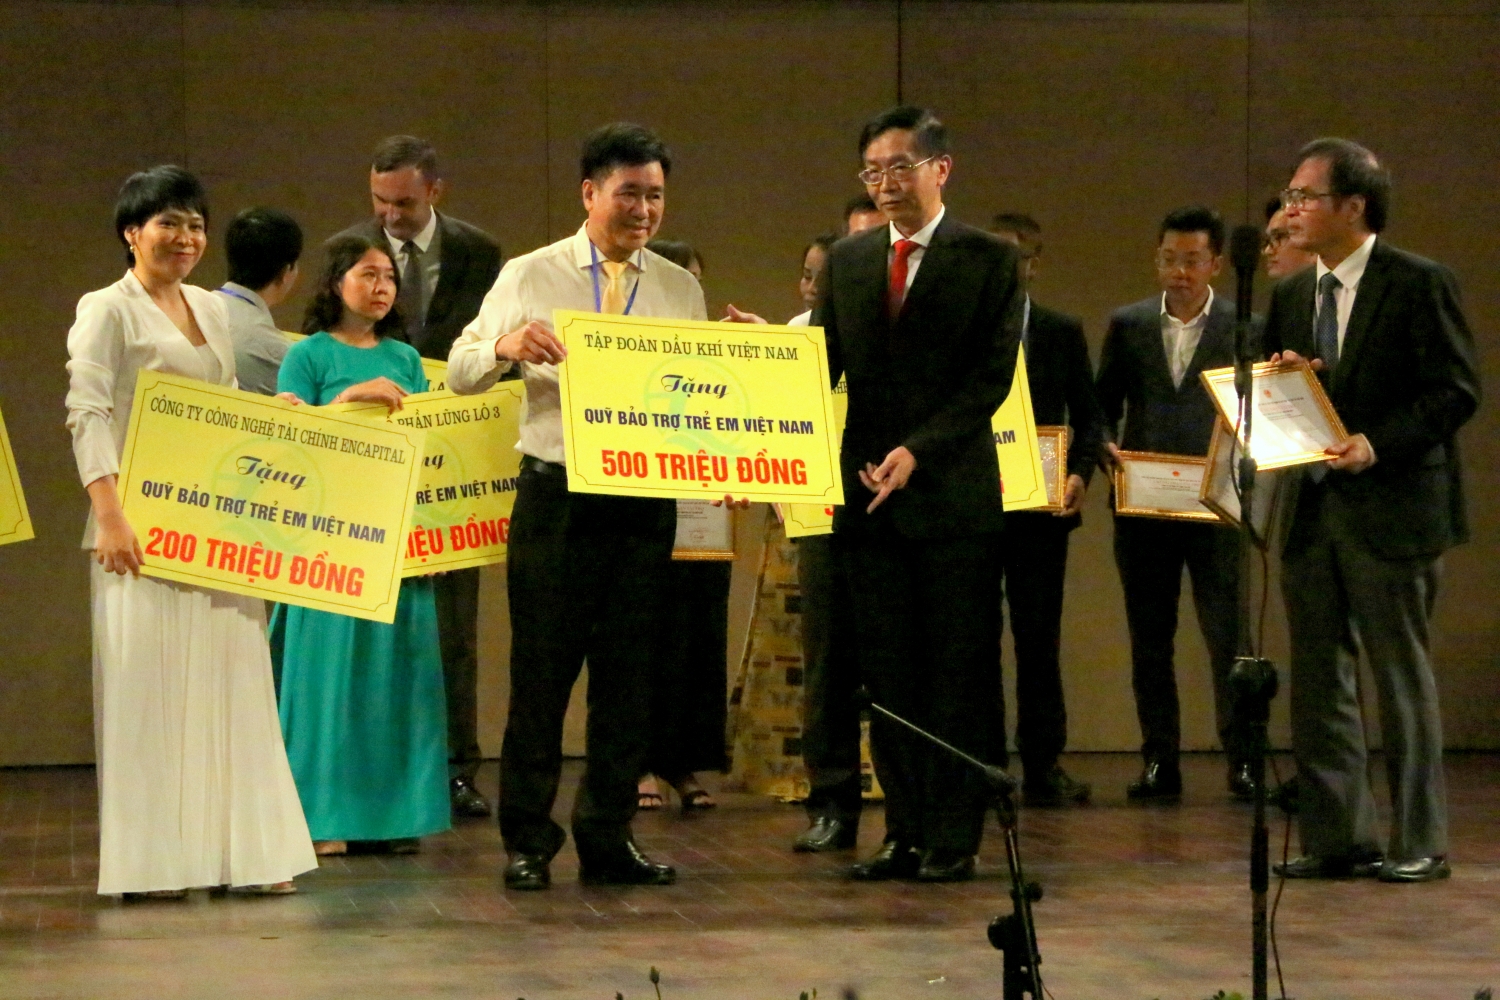 Thay mặt lãnh đạo Tập đoàn Dầu khí Việt Nam, ông Trần Quang Dũng trao tặng Quỹ Bảo trợ trẻ em Việt Nam 500 triệu đồng